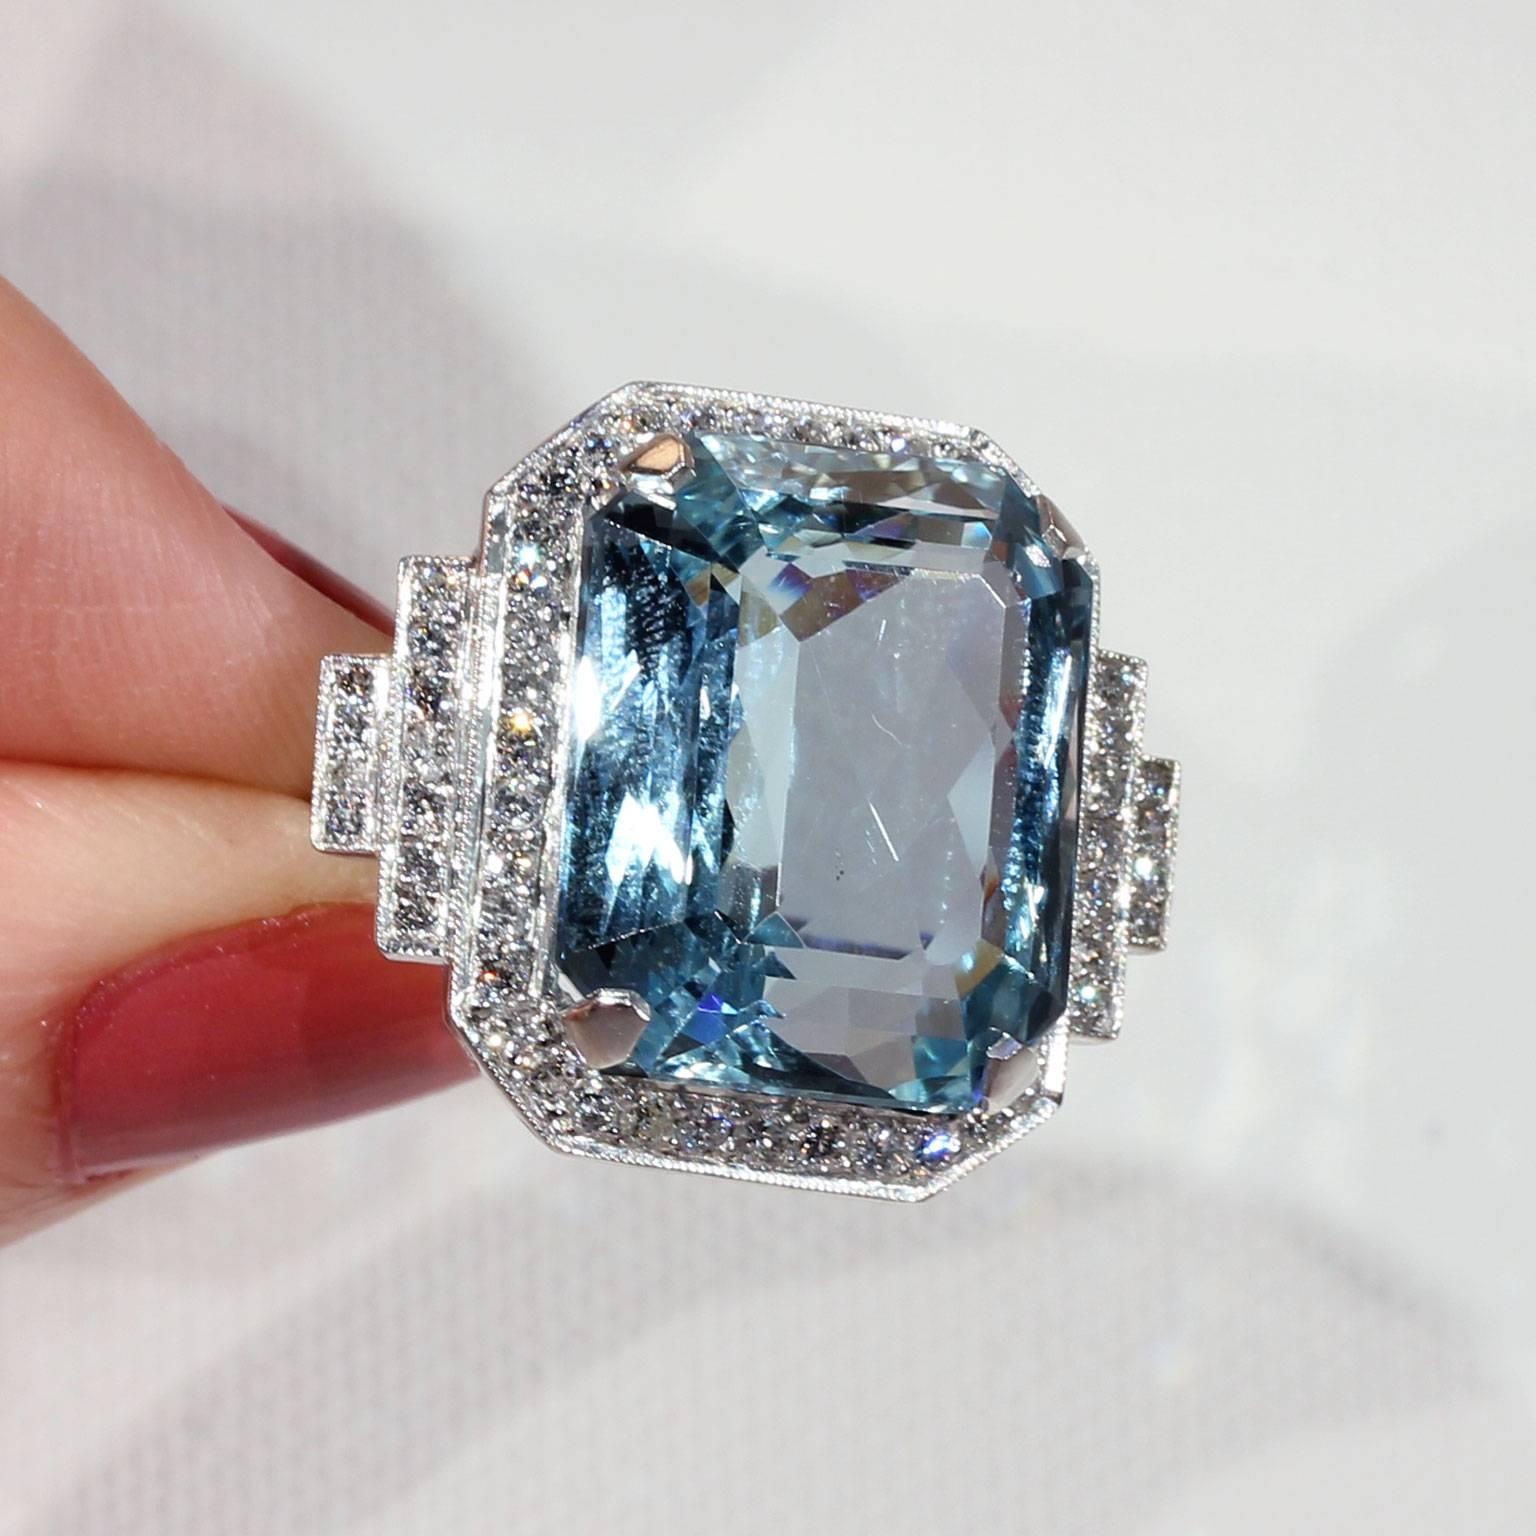 26 Carat Aquamarine Diamond Cocktail Ring For Sale 2